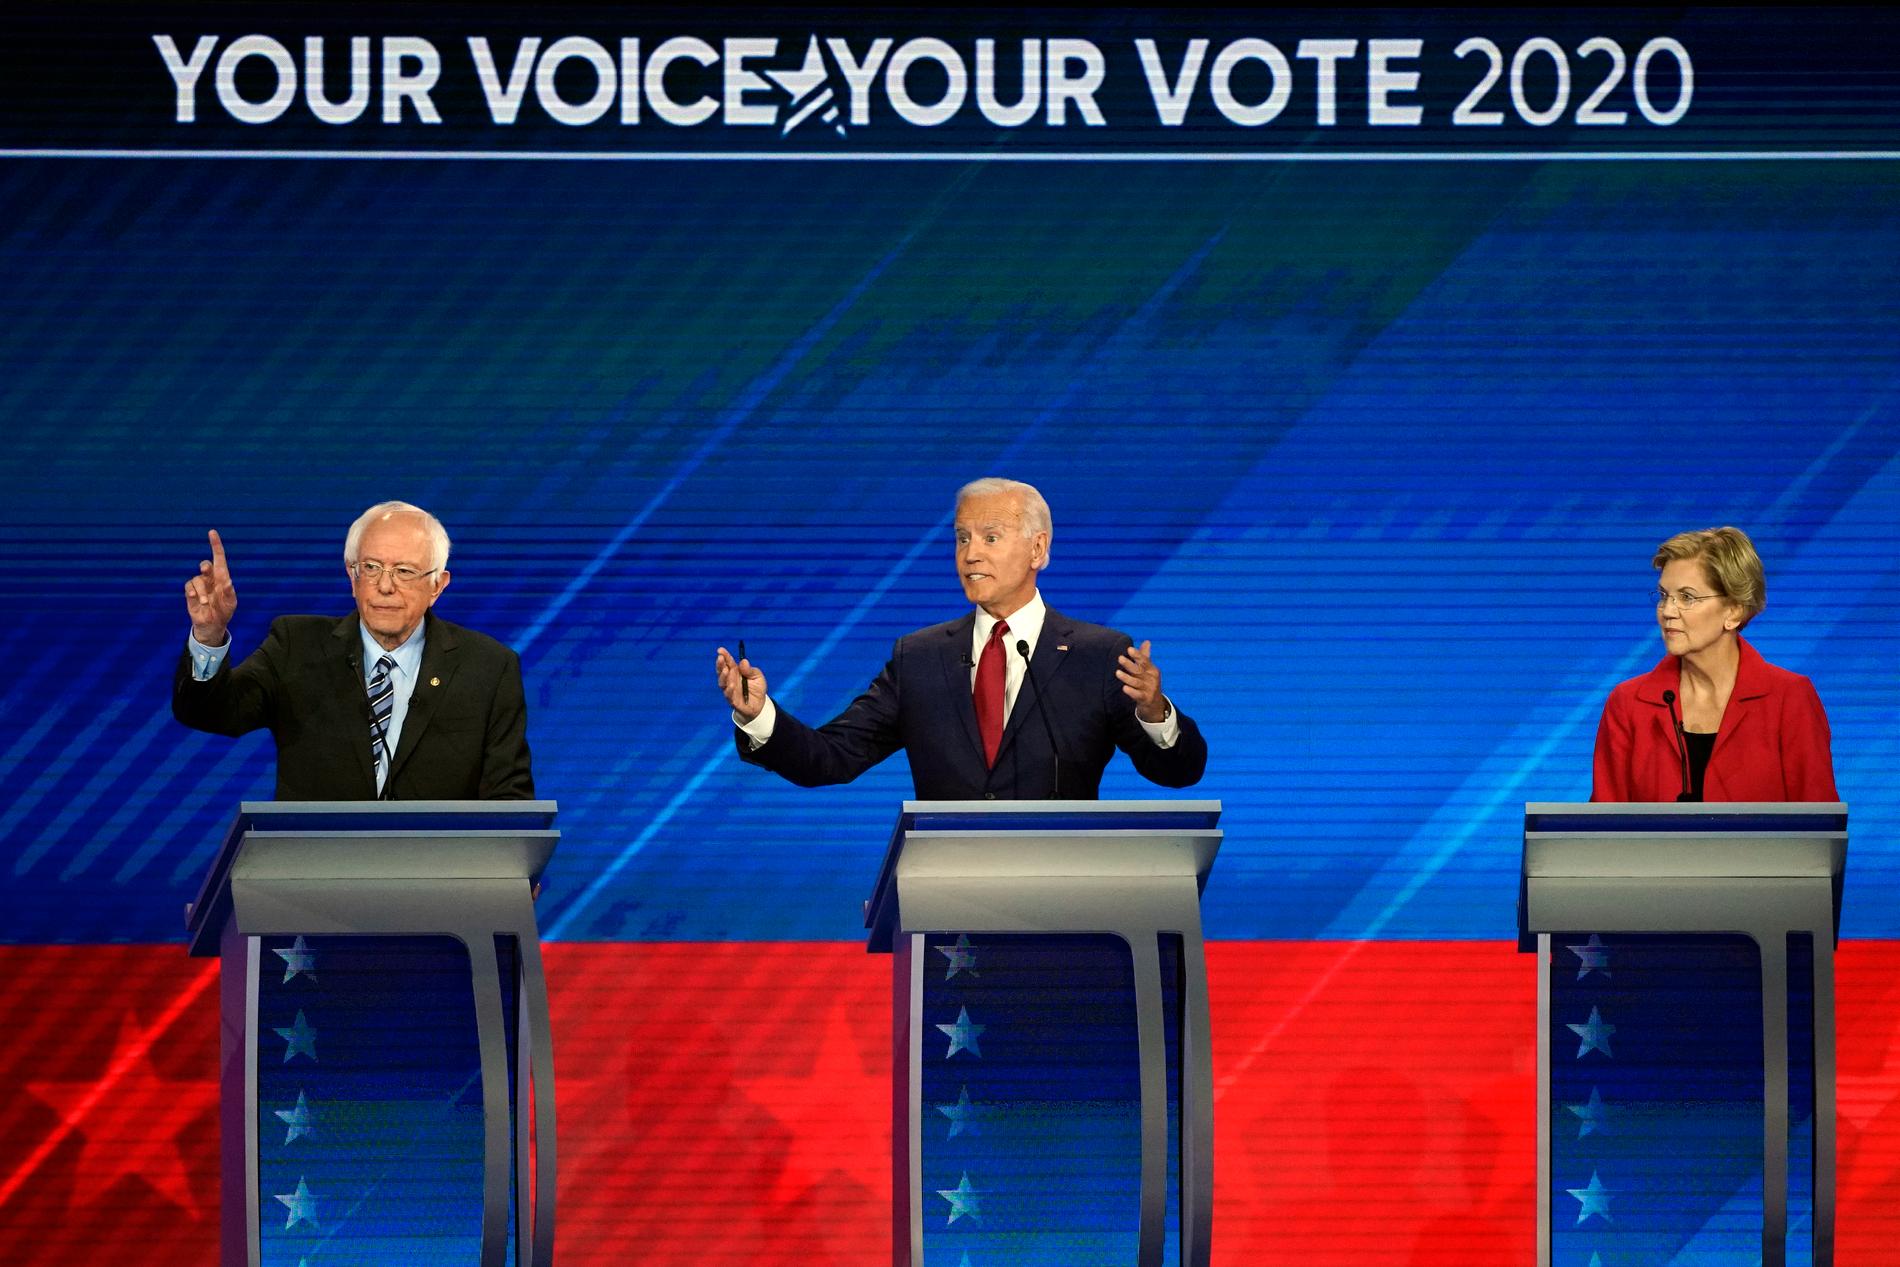 Presidentaspiranterna Bernie Sanders, Joe Biden och Elizabeth Warren fick stå i mitten under debatten, eftersom de utgör tättrion i opinionen.